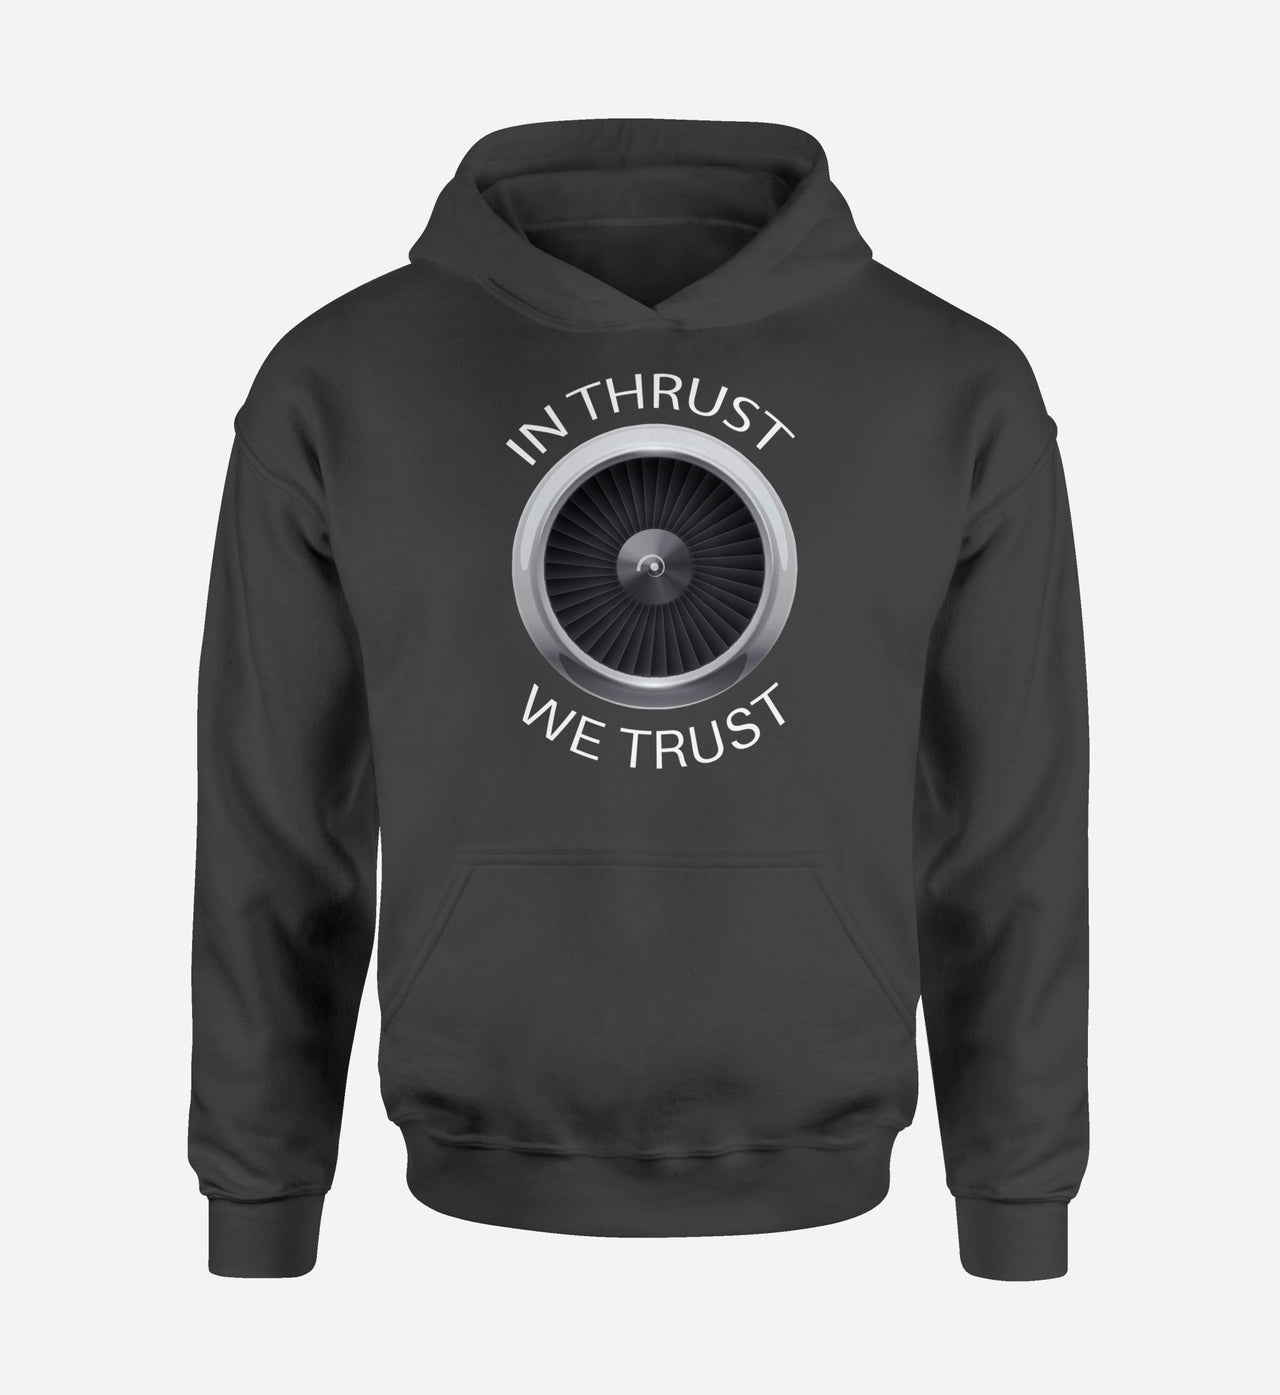 In Thrust We Trust Designed Hoodies